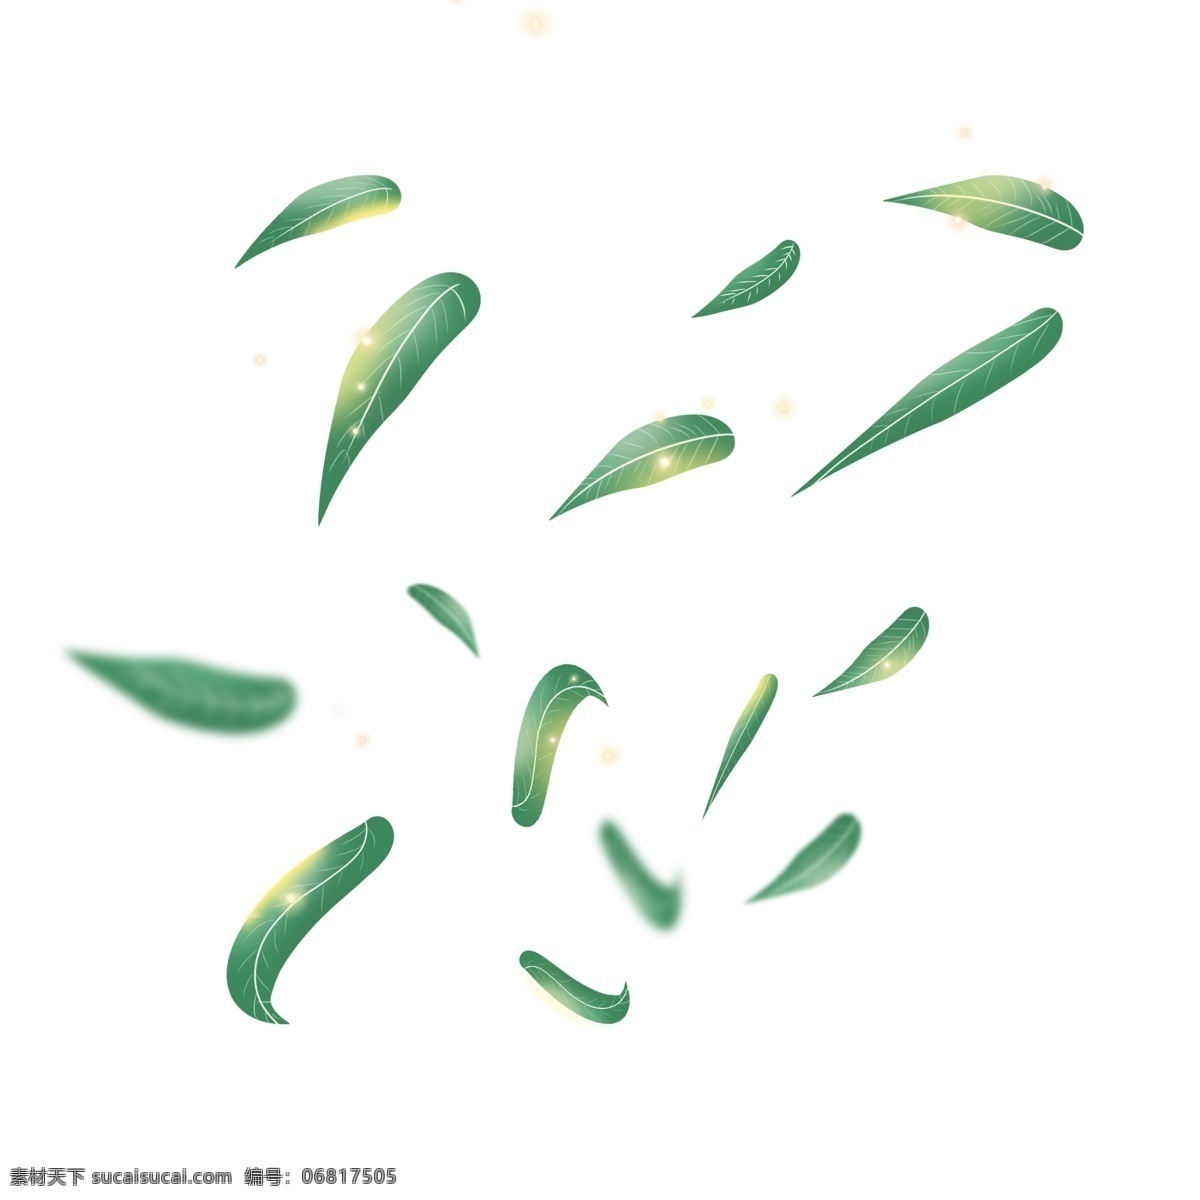 绿色 光点 漂浮 柳叶 清明节 光 飞舞 叶片 黄绿 简约 装饰 插画 海报 手绘 渐变